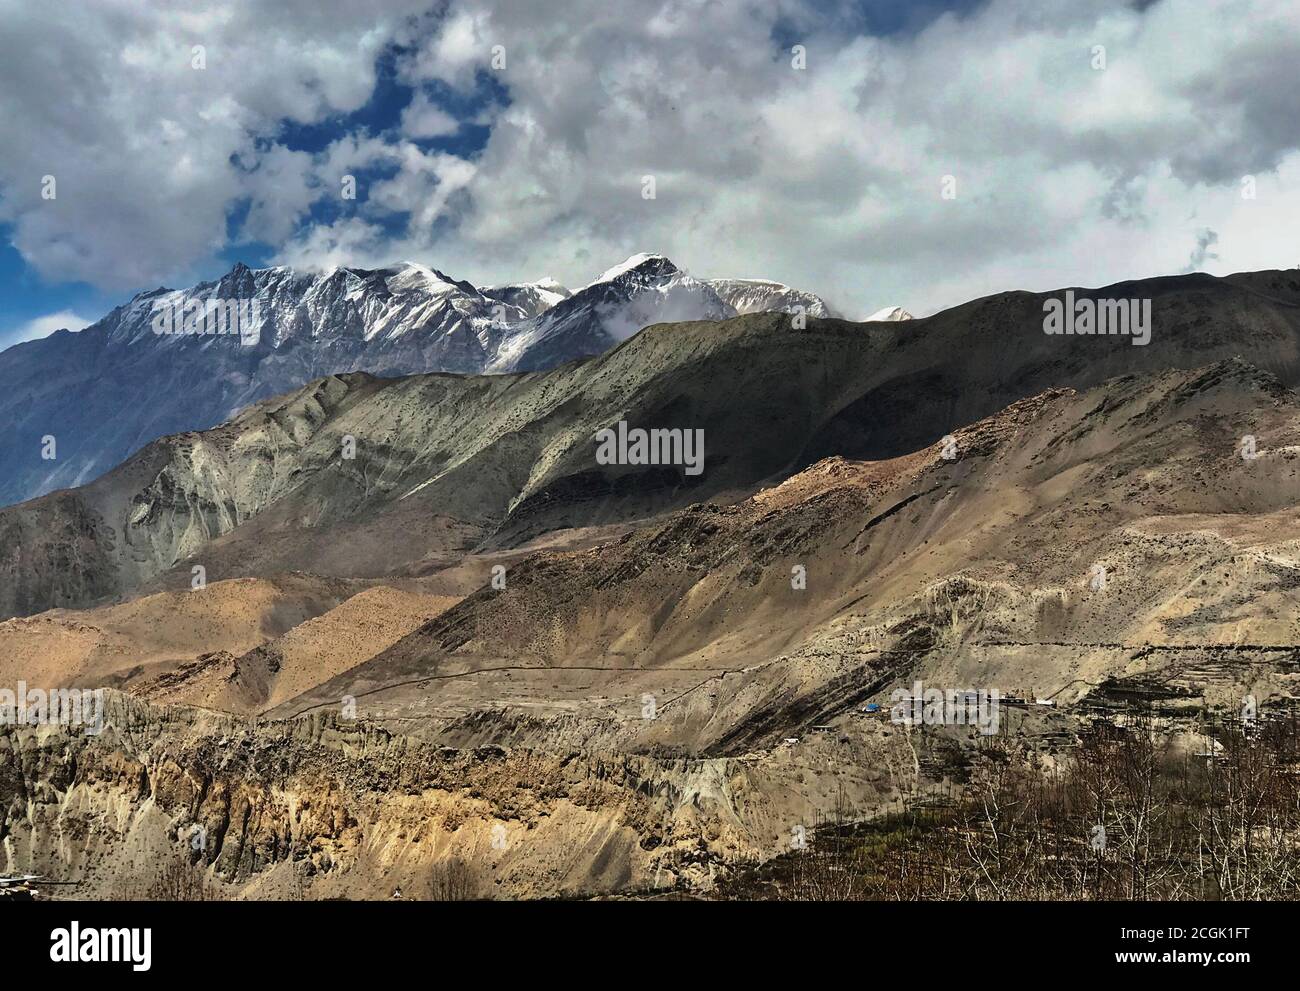 Montagnes de l'Himalaya dans le district de Mustang, Népal, Asie. Paysage de l'Himalaya incroyable. Chaîne de montagnes enneigées. Annapurna circuit.nature sauvage impressionnante Banque D'Images